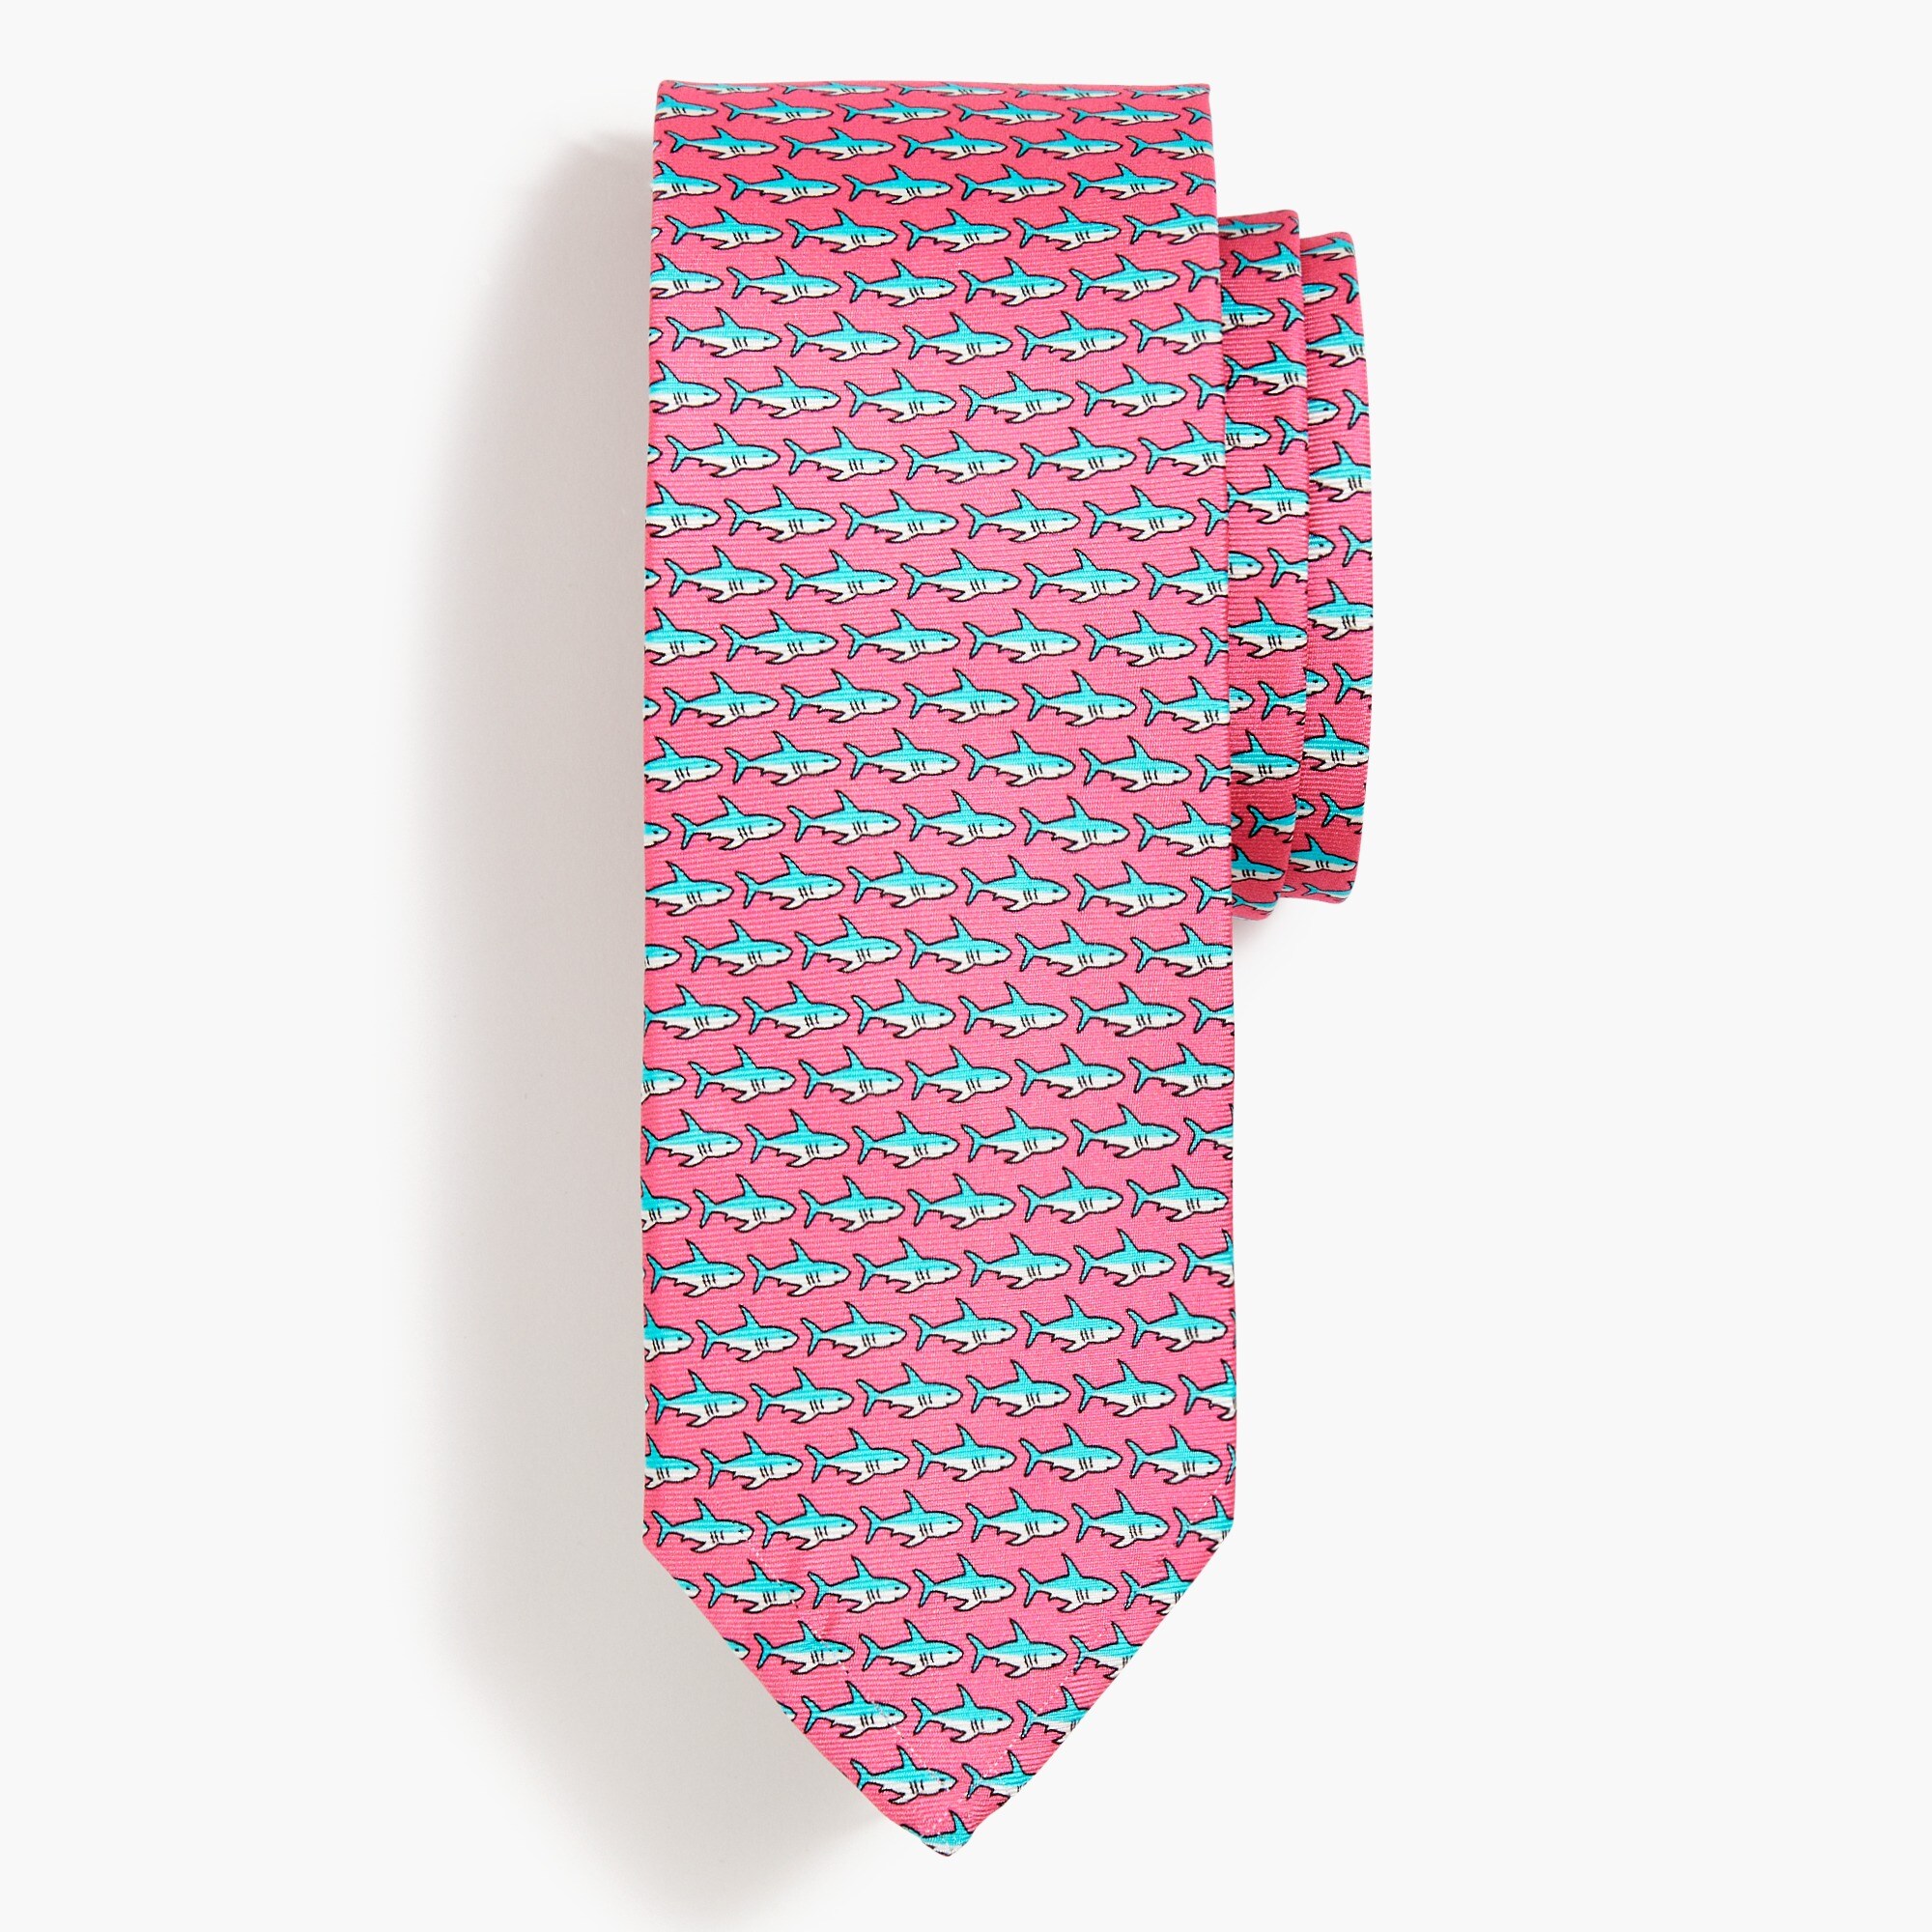  Shark tie